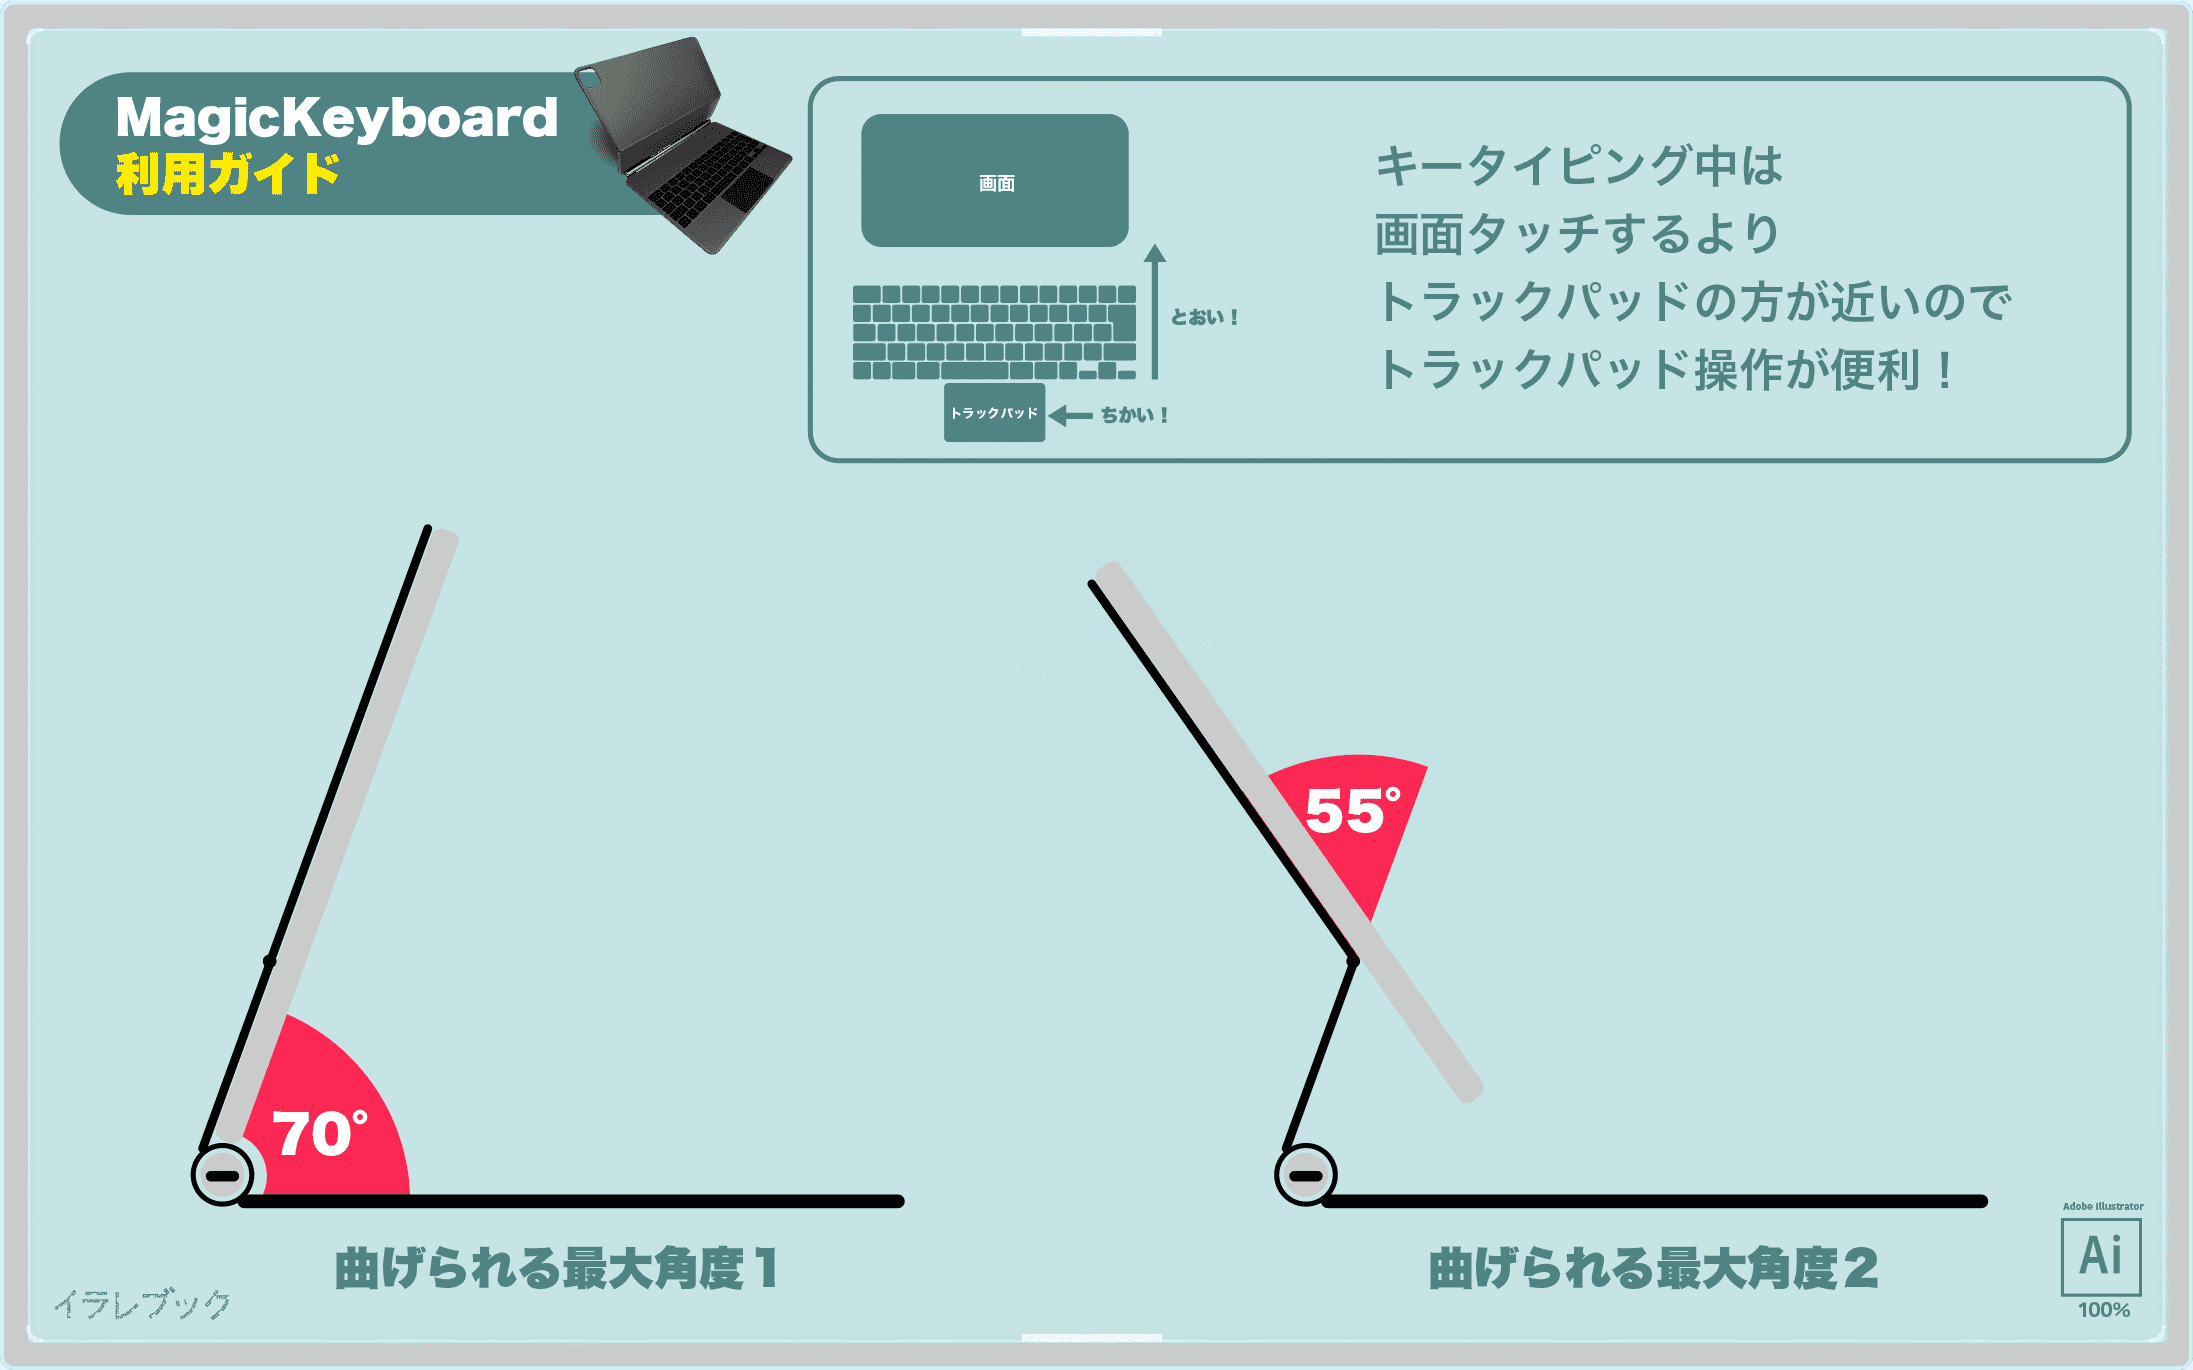 Magickeyboard 使い方 利用ガイド 従来のキーボードと比較 4コマ漫画 Ipadmagickeyboard